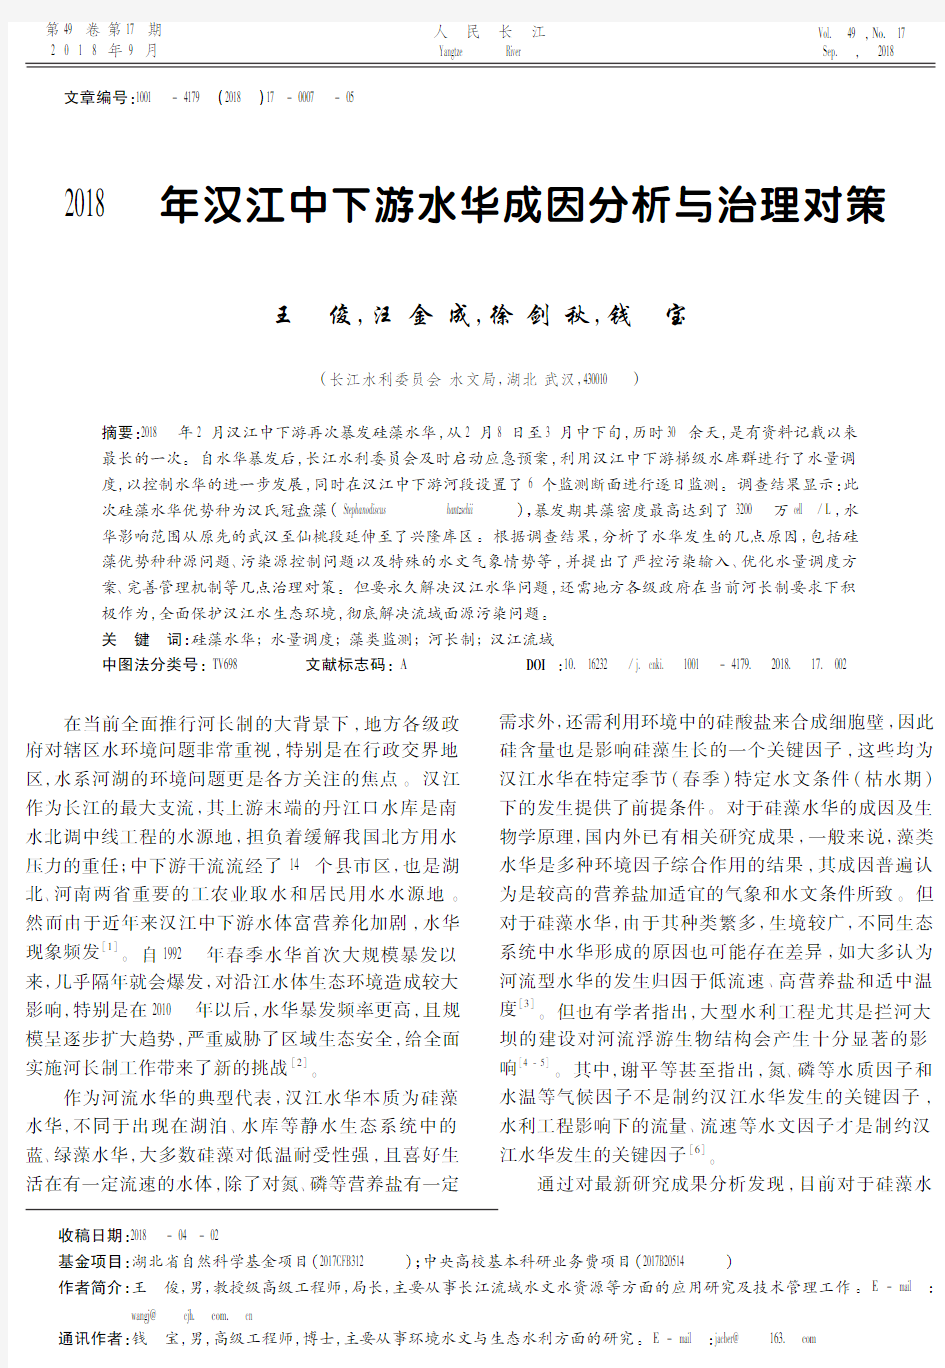 2018年汉江中下游水华成因分析与治理对策